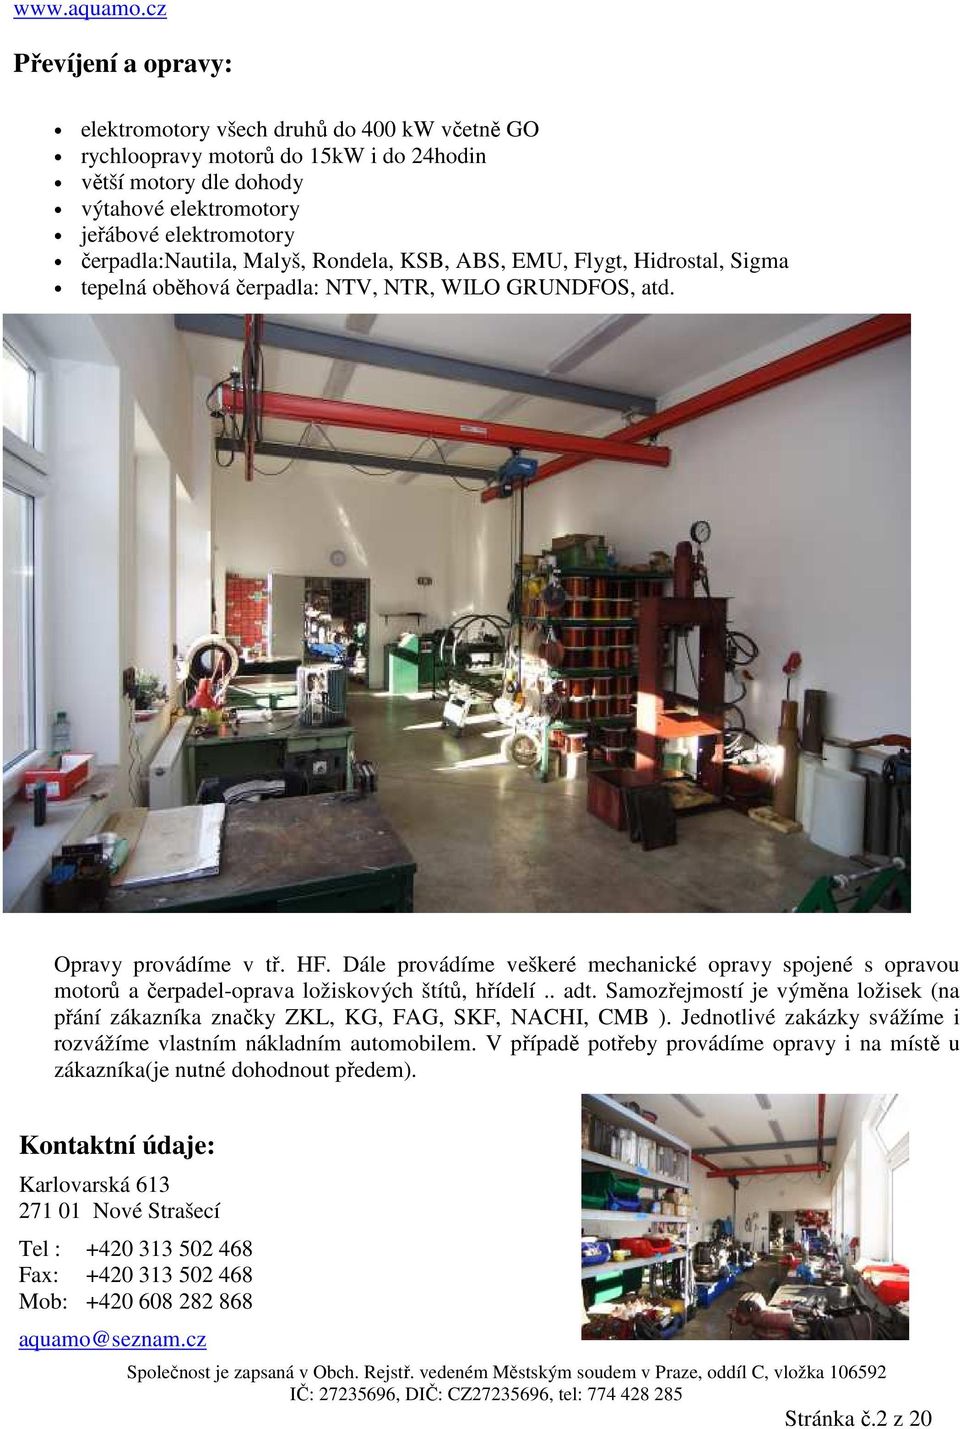 Opravy a prodej čerpadel a el. motorů Karlovarská 613, Nové Strašecí - PDF  Free Download